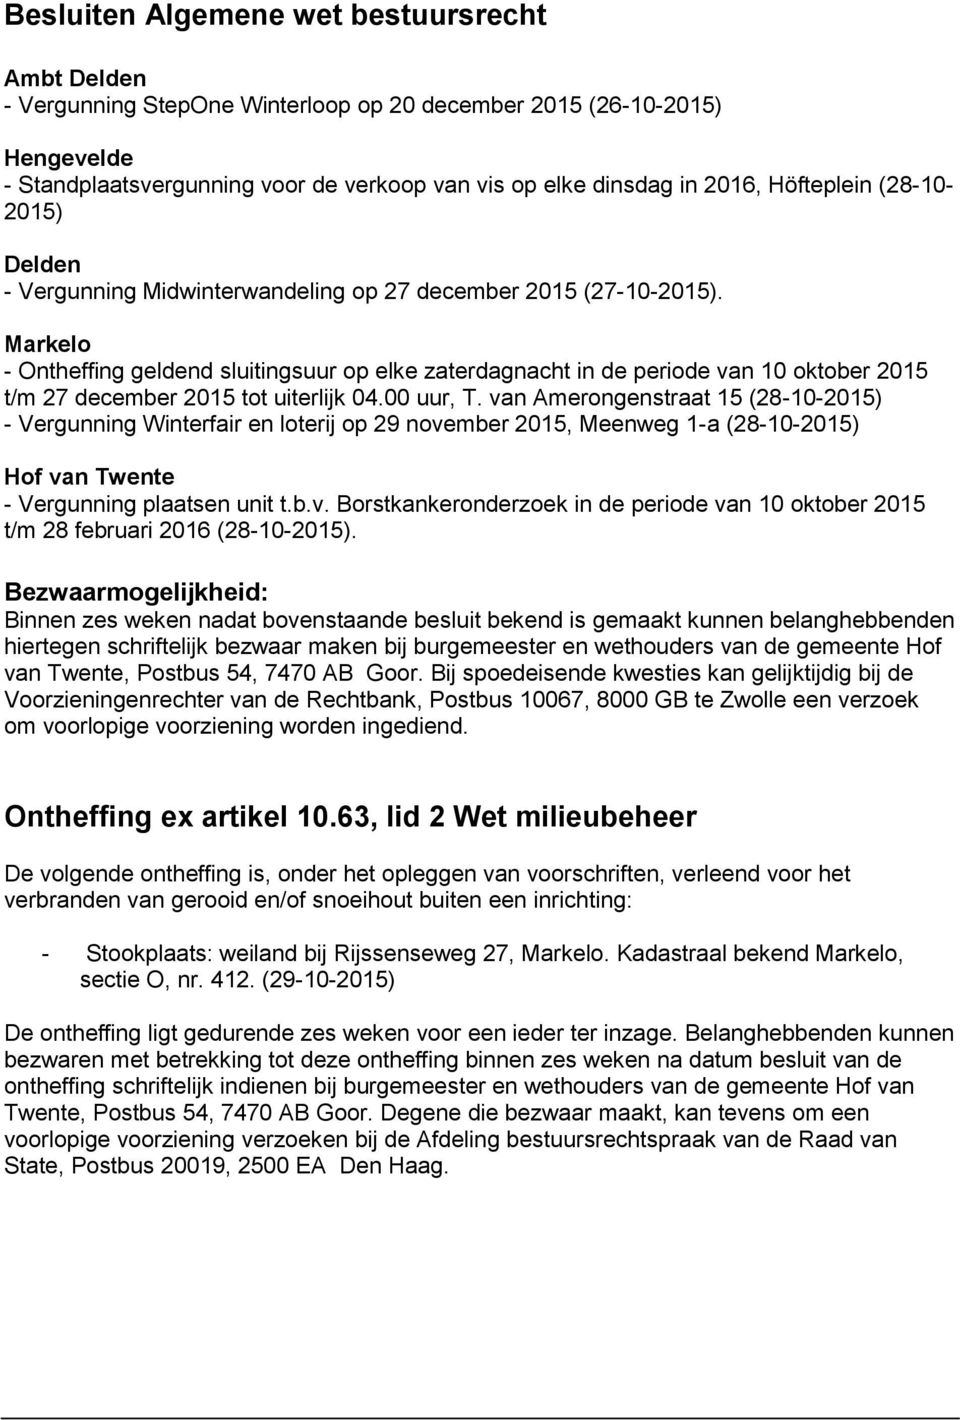 00 uur, T. van Amerongenstraat 15 (28-10-) - Vergunning Winterfair en loterij op 29 november, Meenweg 1-a (28-10-) Hof van Twente - Vergunning plaatsen unit t.b.v. Borstkankeronderzoek in de periode van 10 oktober t/m 28 februari 2016 (28-10-).